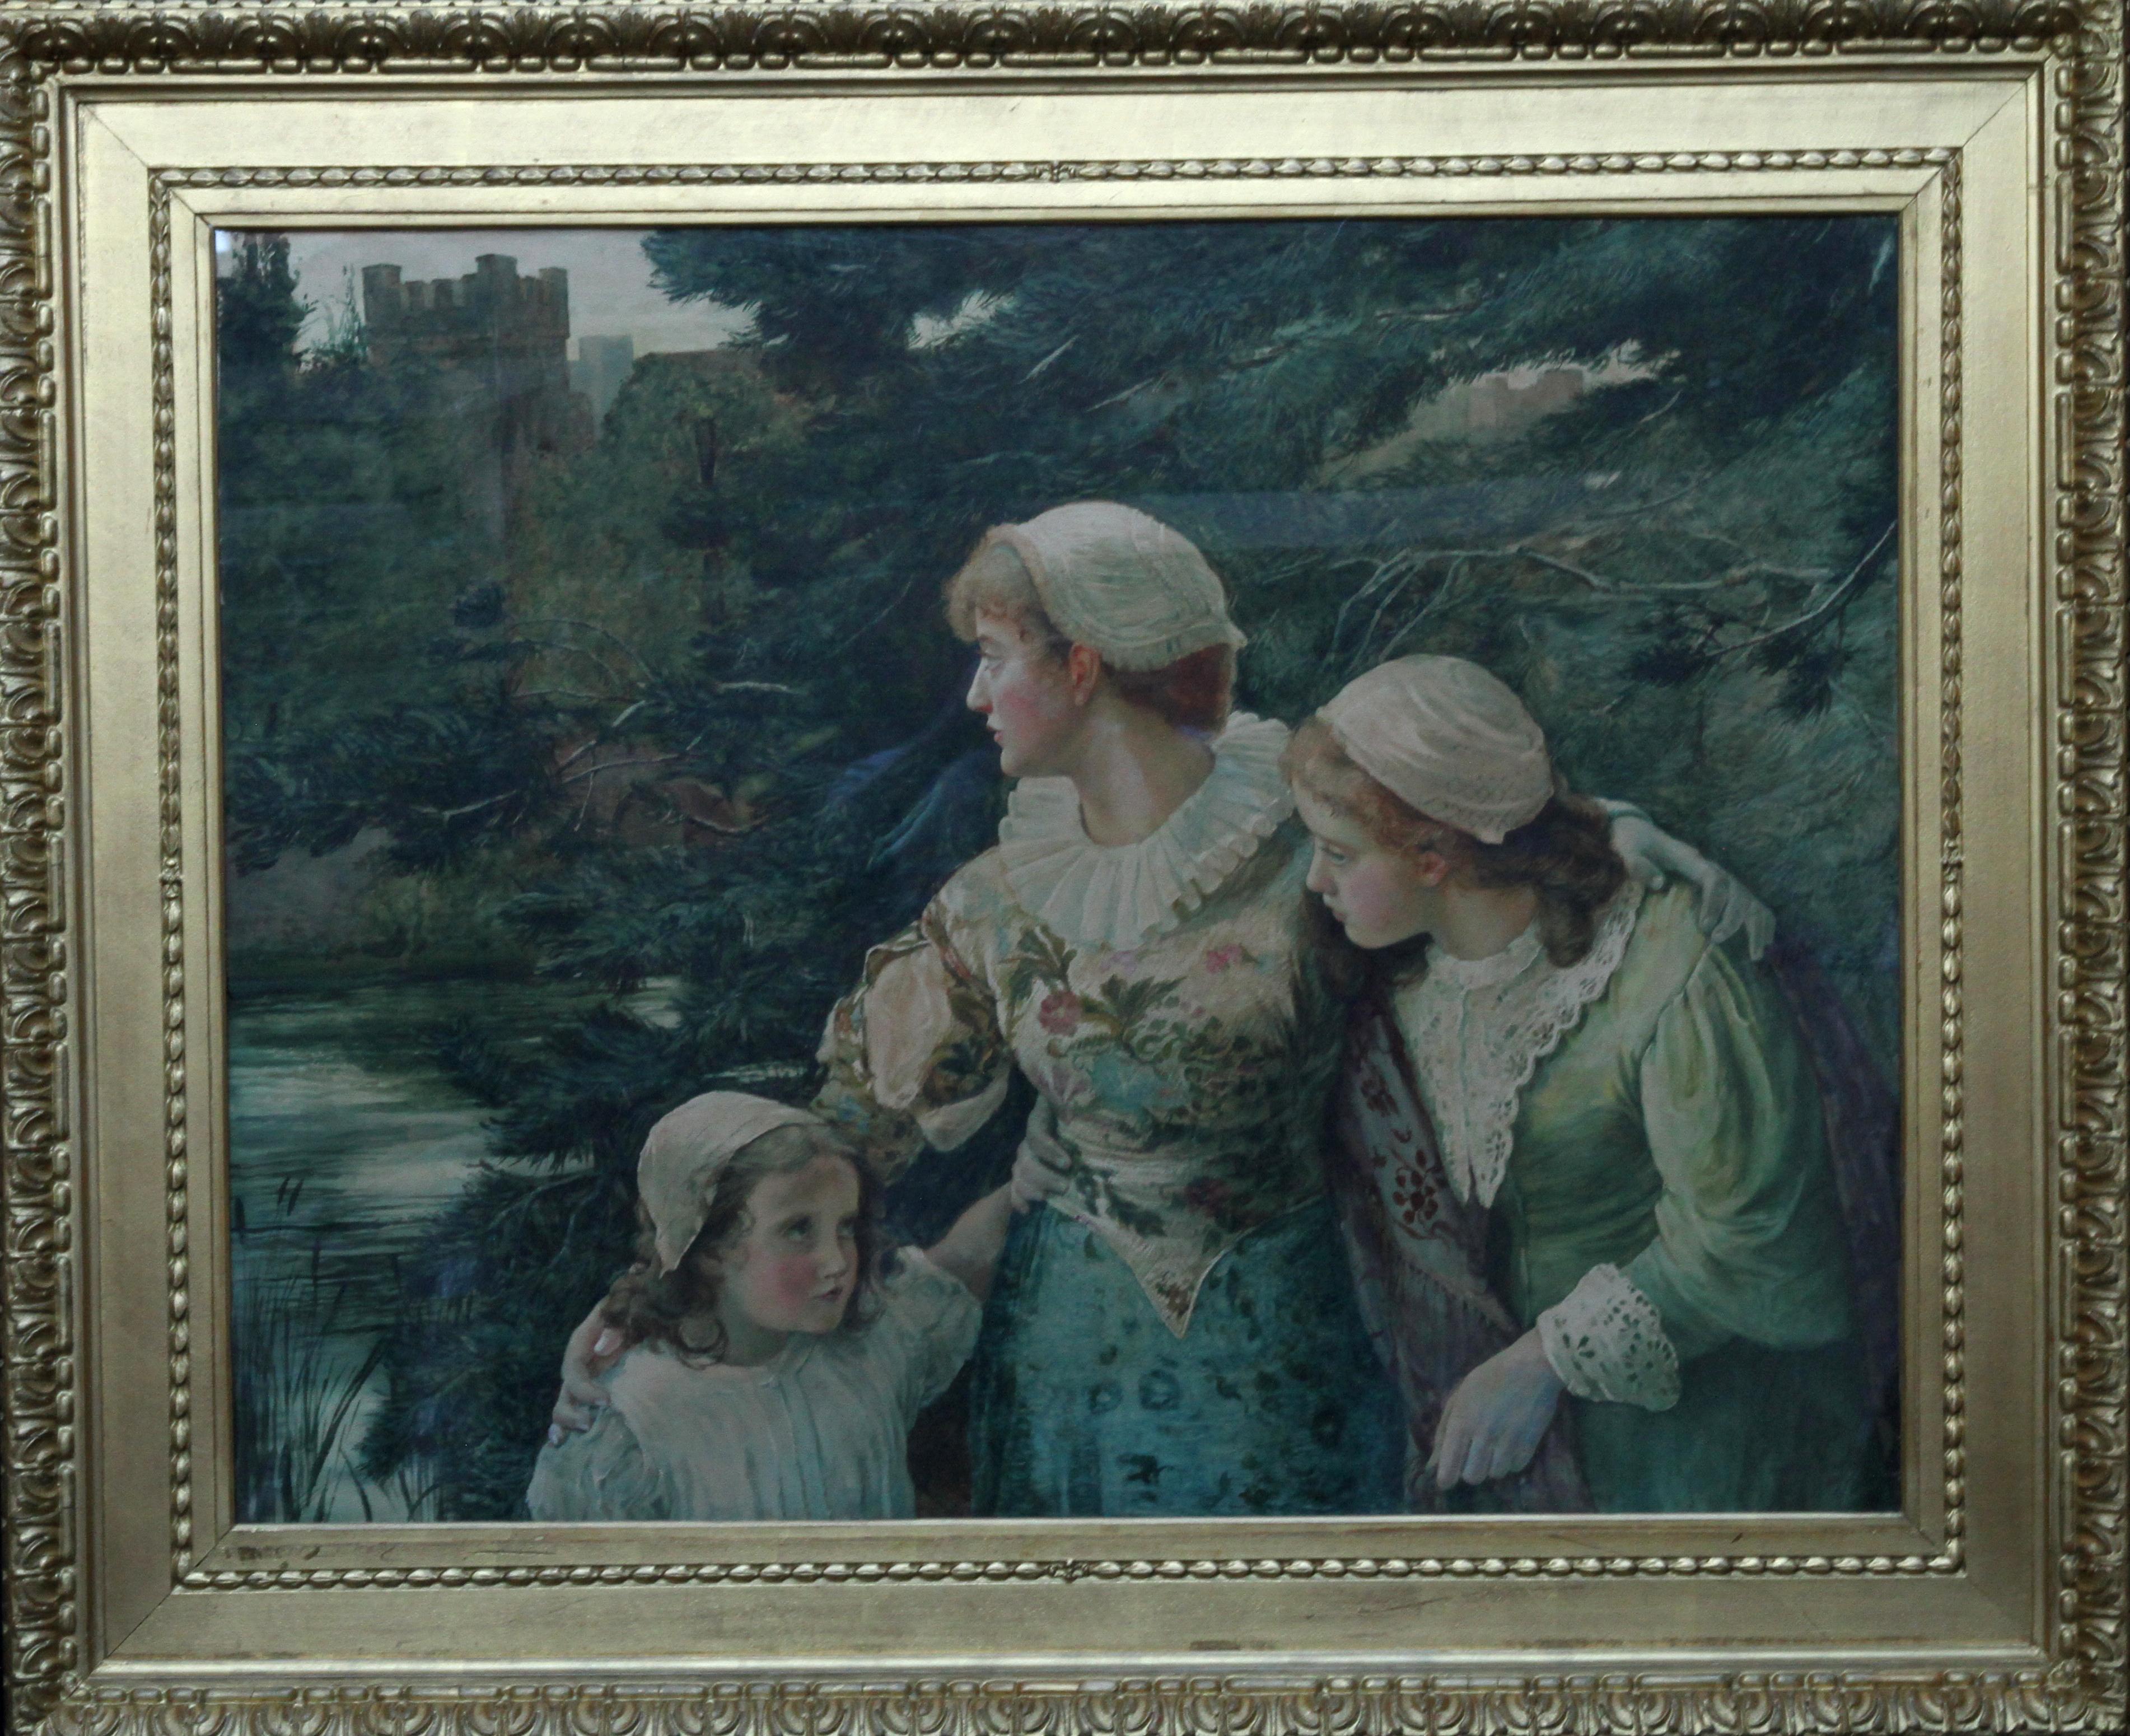 The Village Maids - L'art victorien britannique a exposé une peinture à l'aquarelle de 1880